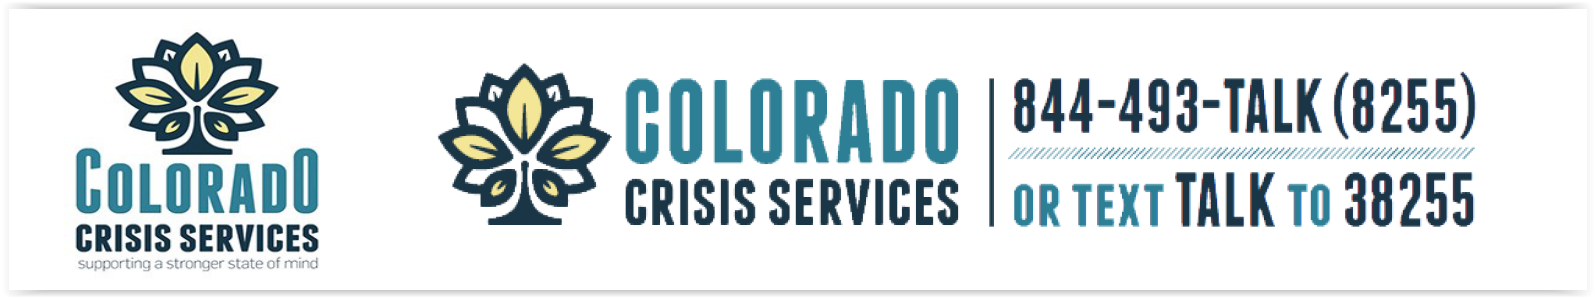 Colorado Crisis Services Number